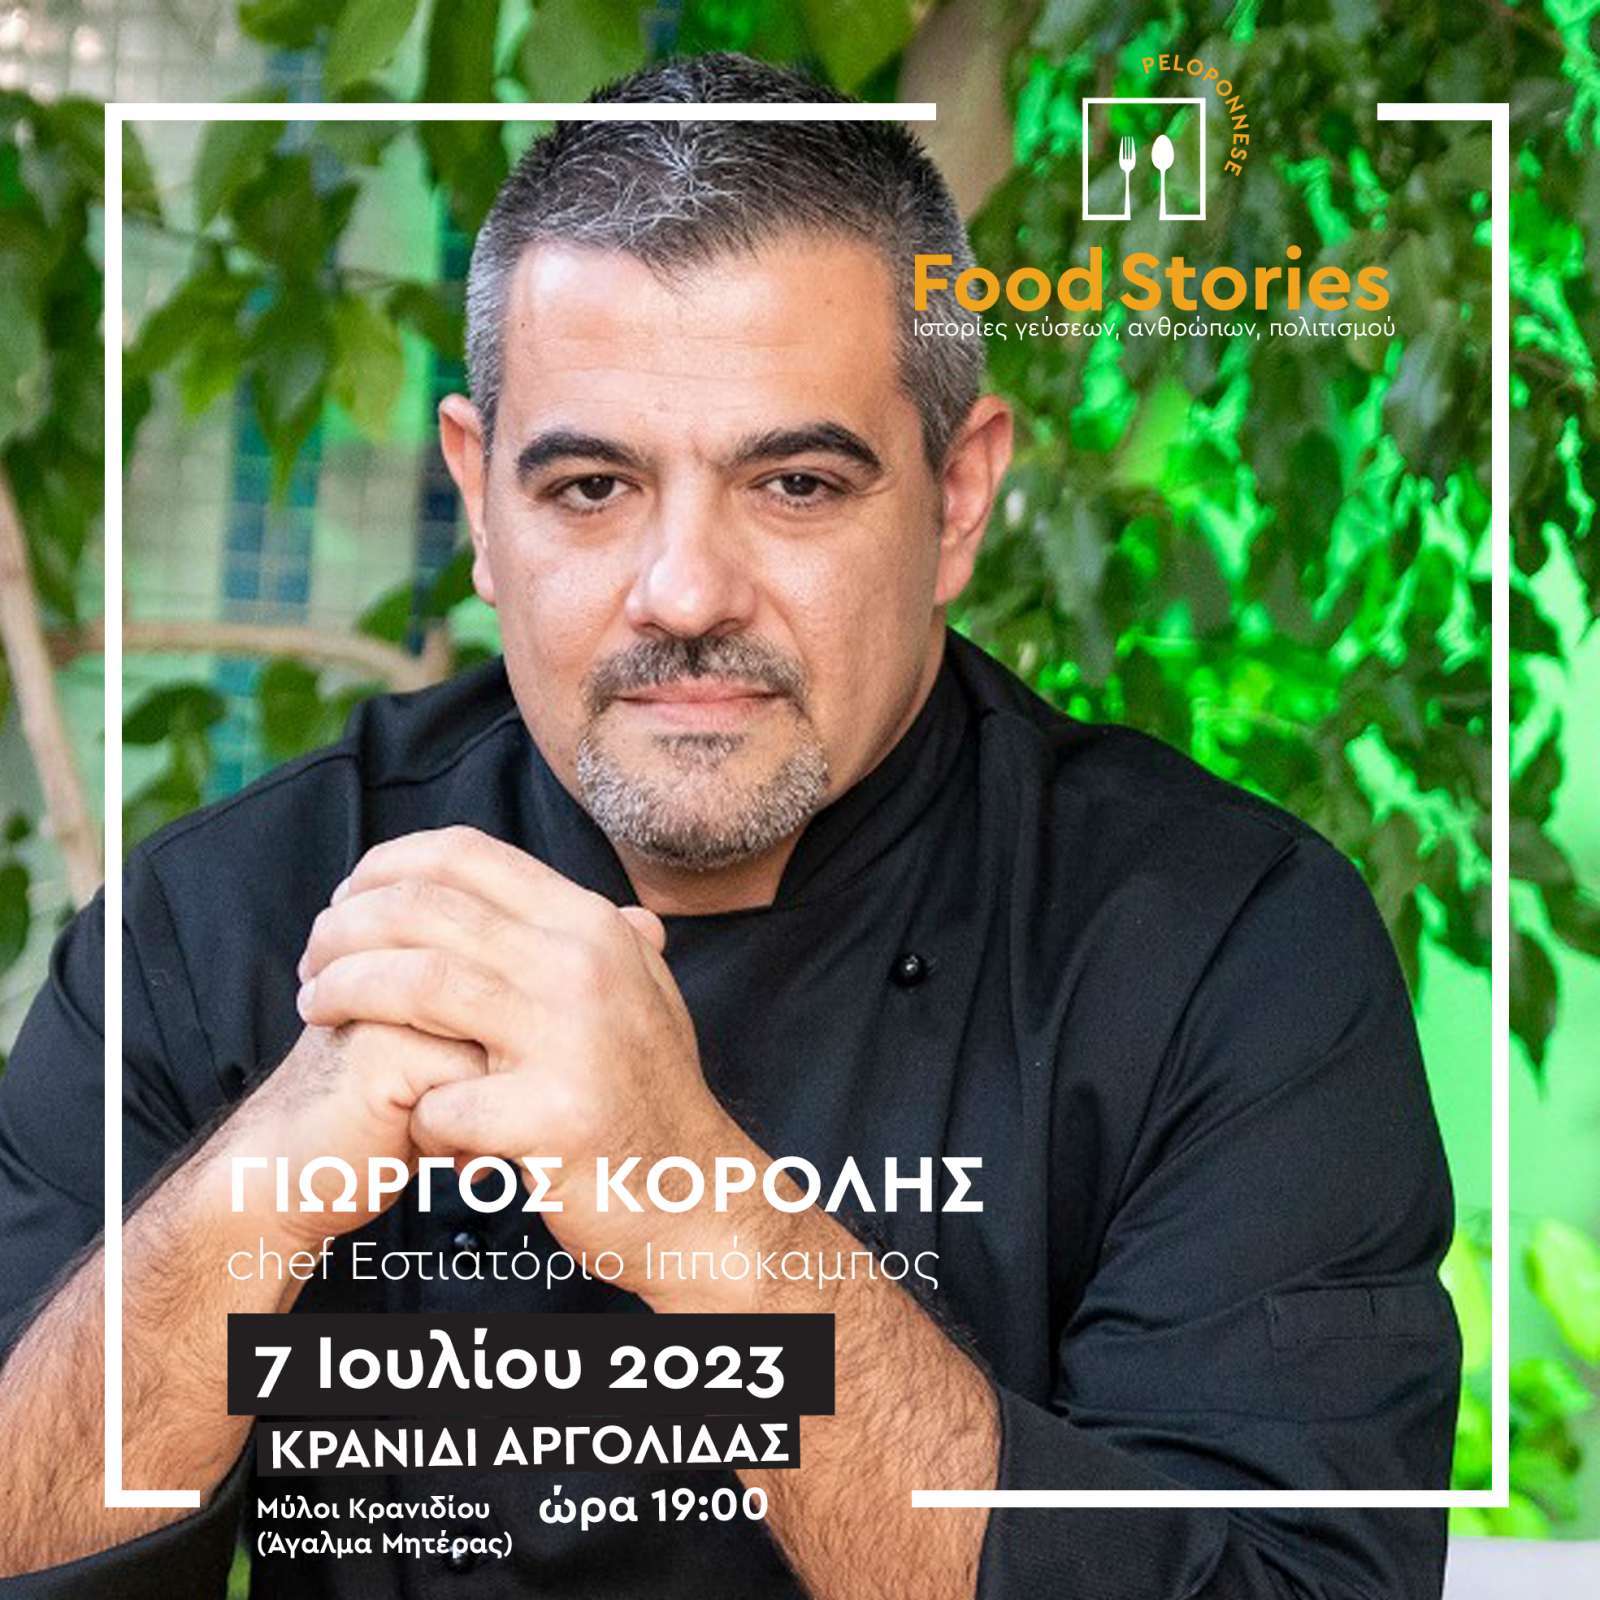 Ξεκινά αύριο Παρασκευή 7 Ιουλίου, στο Κρανίδι, η πρώτη φετινή εκδήλωση του 2ου Φεστιβάλ Γαστρονομίας Πελοποννήσου “Peloponnese Food Stories 2023 | Ιστορίες Γεύσεων, Ανθρώπων, Πολιτισμού”